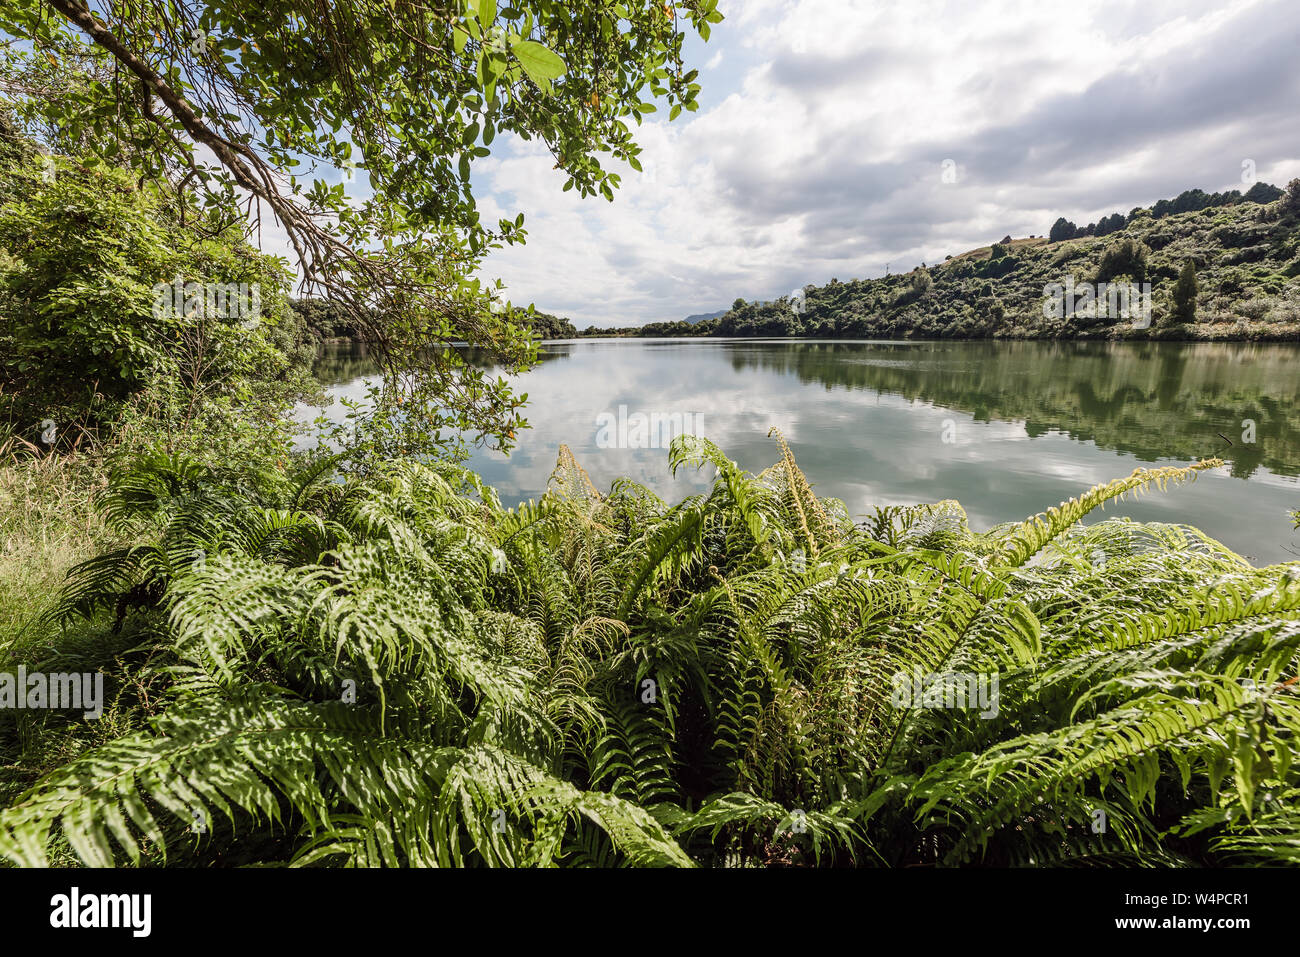 Landscape image of lush lakeside scene in New Zealand Stock Photo